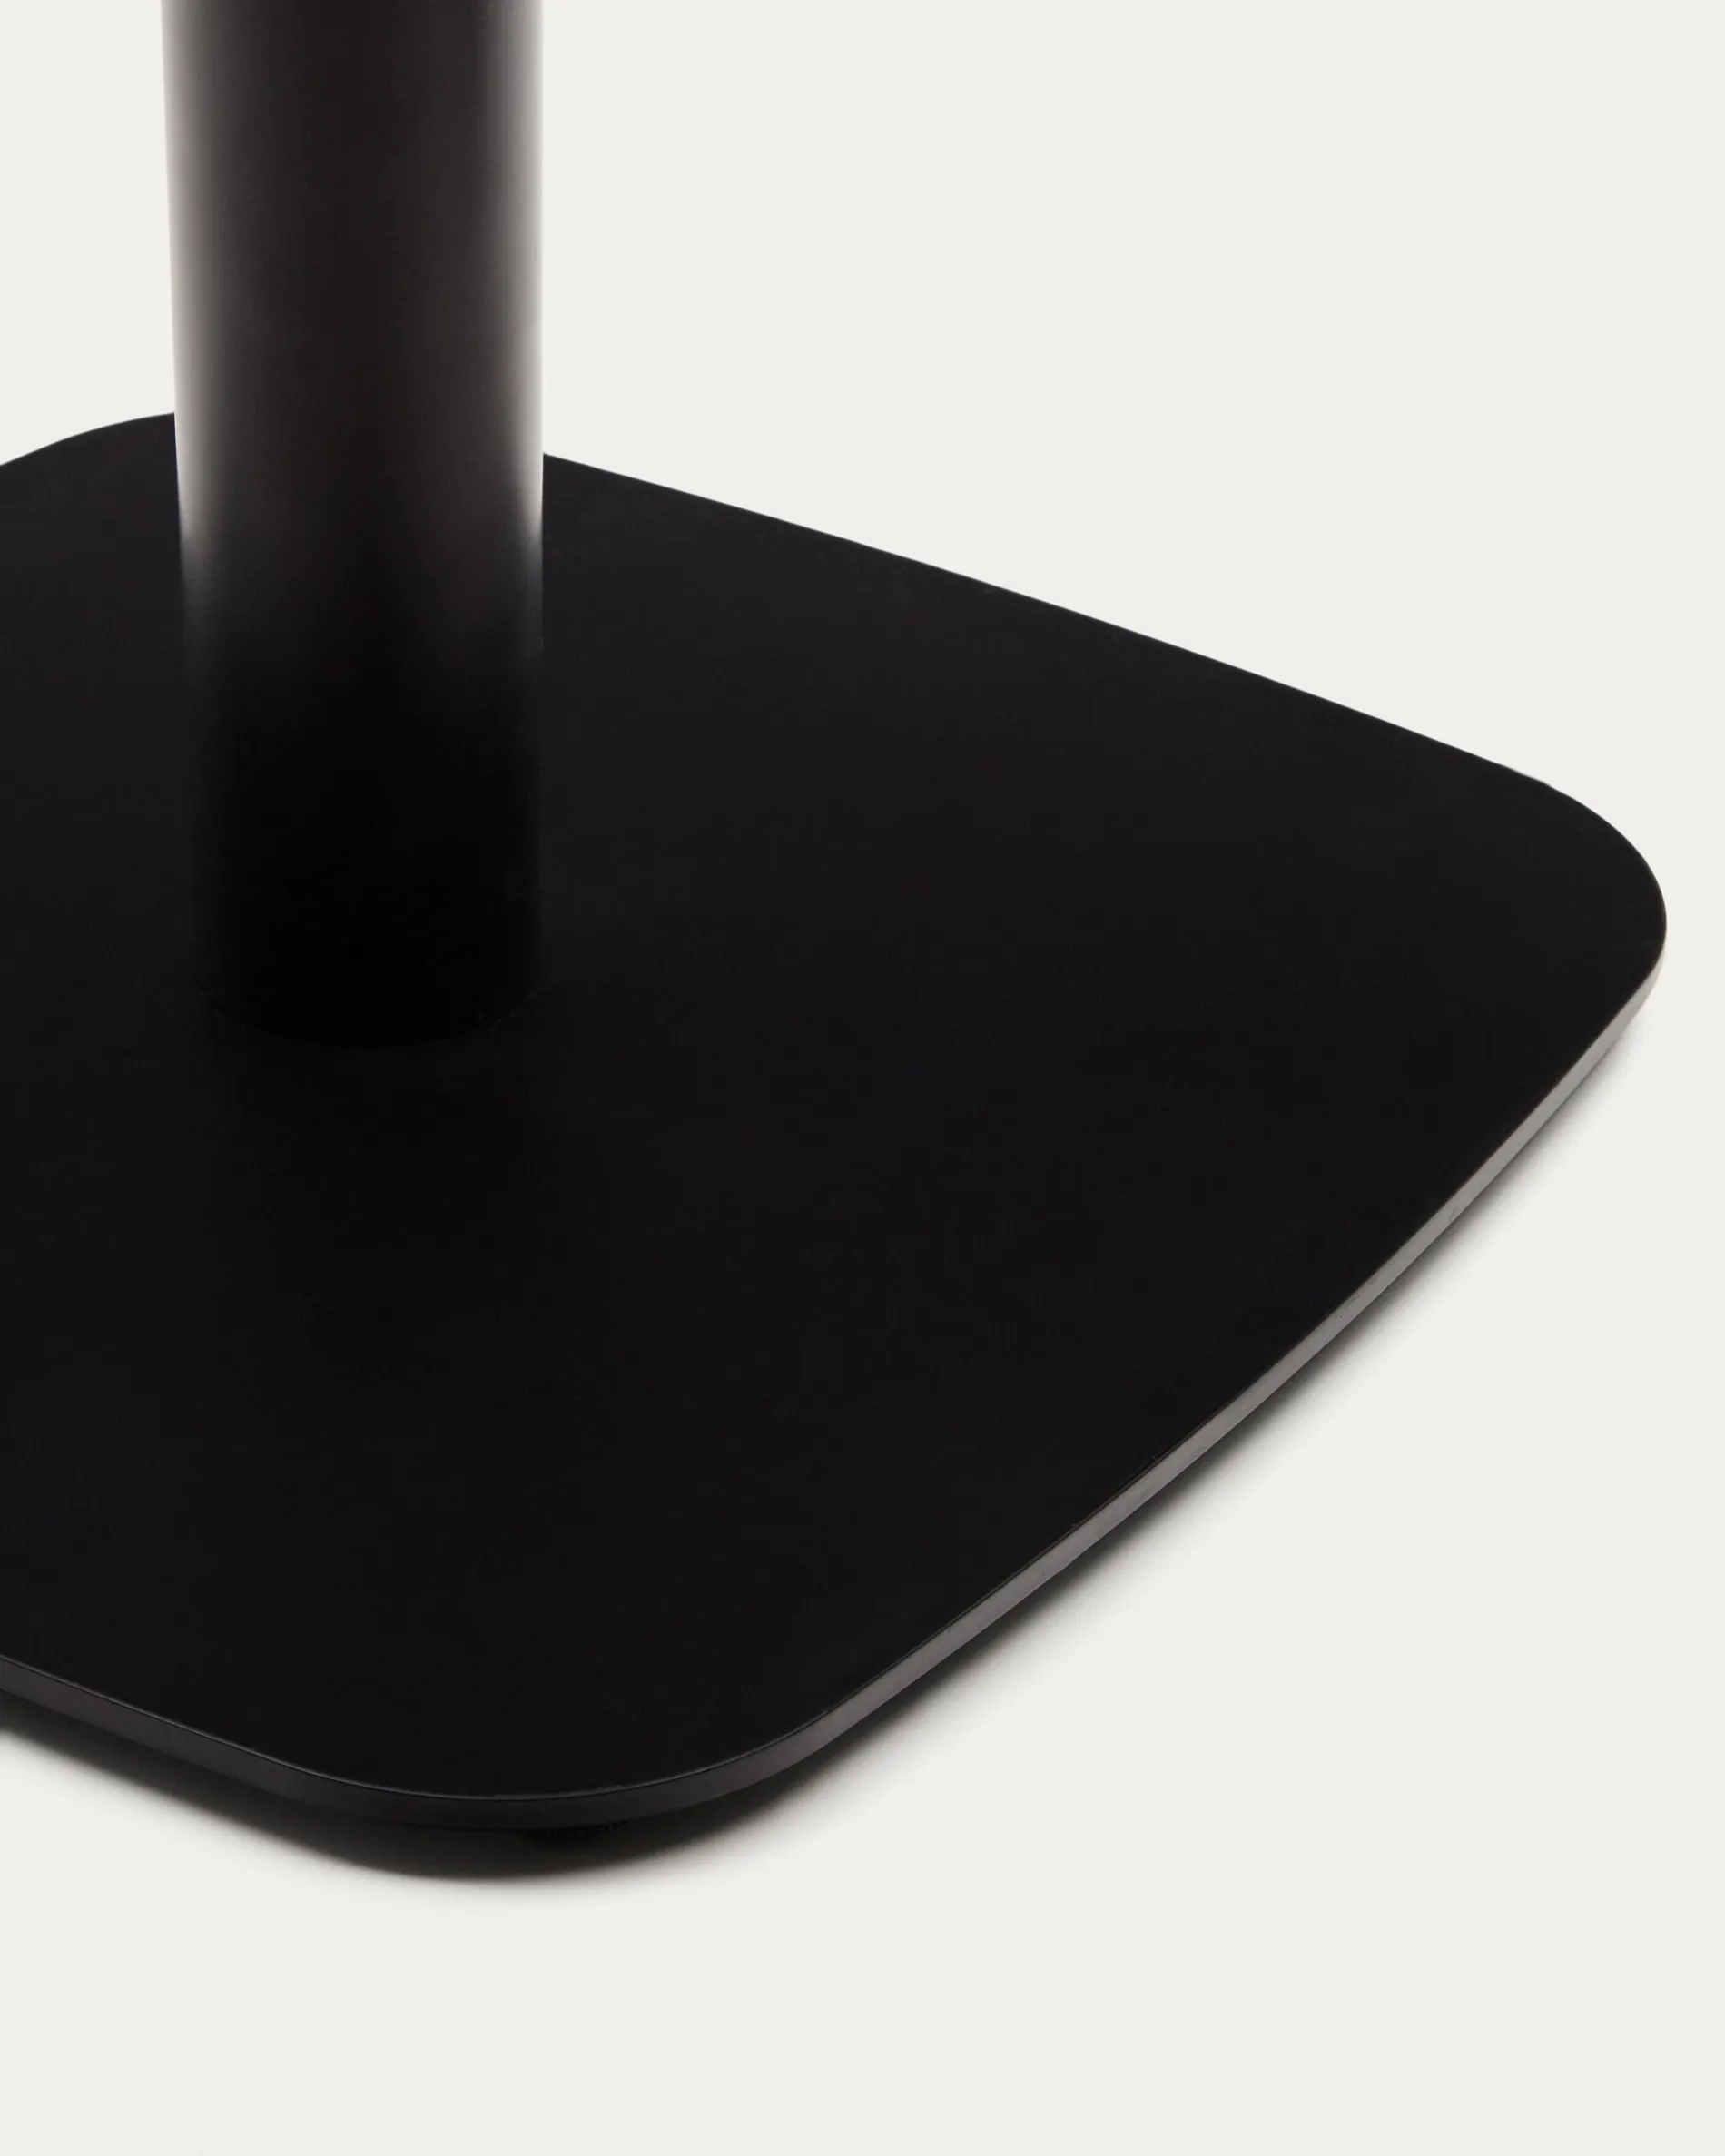 Квадратный уличный столик La Forma Dina белый на черном металлическом основании 68х70 177963